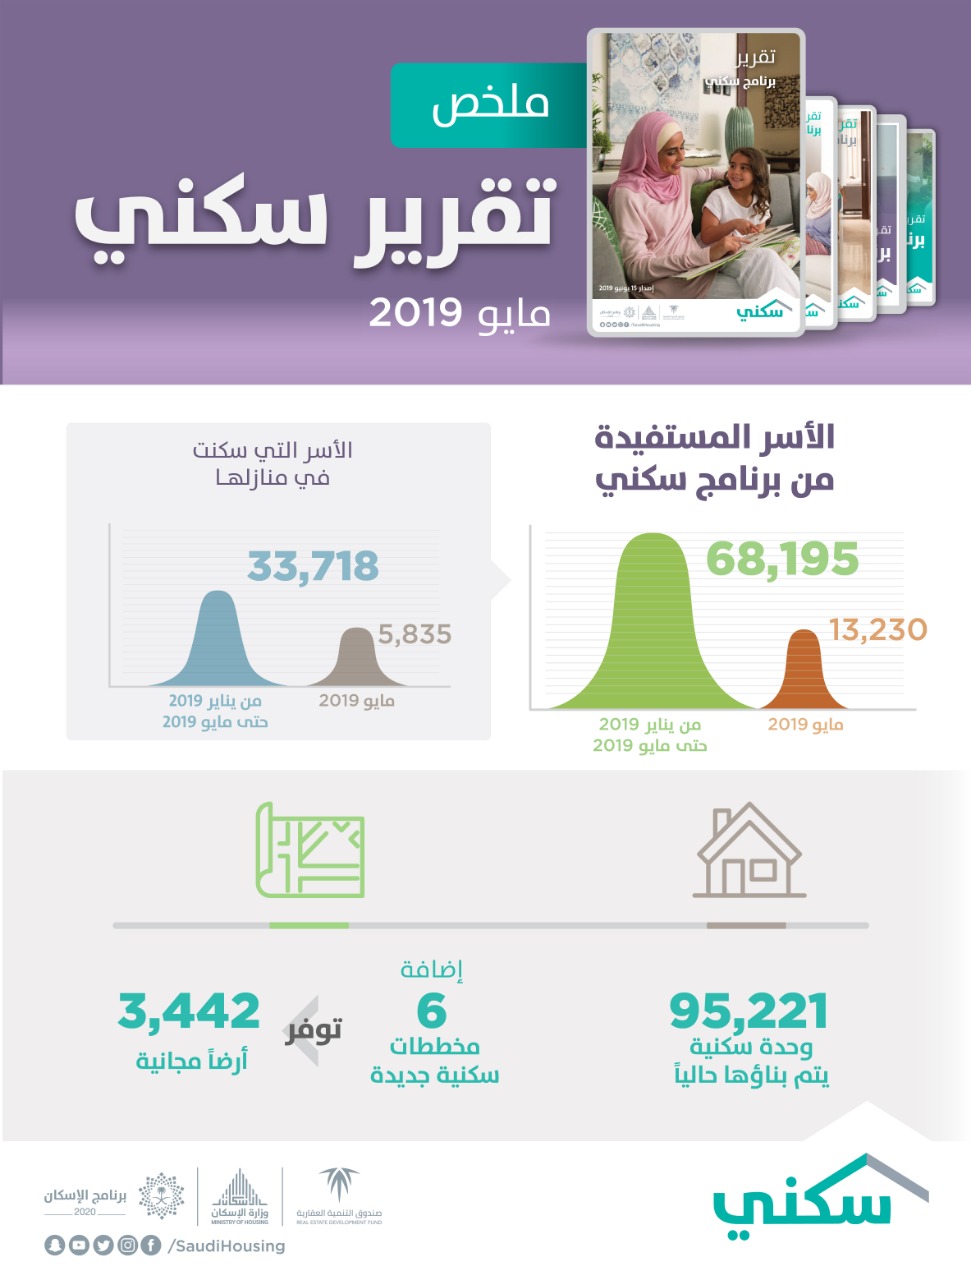 "سكني" يُصدر تقريره لشهر مايو الماضي.. ويكشف عن استفادة 68 ألف أسرة